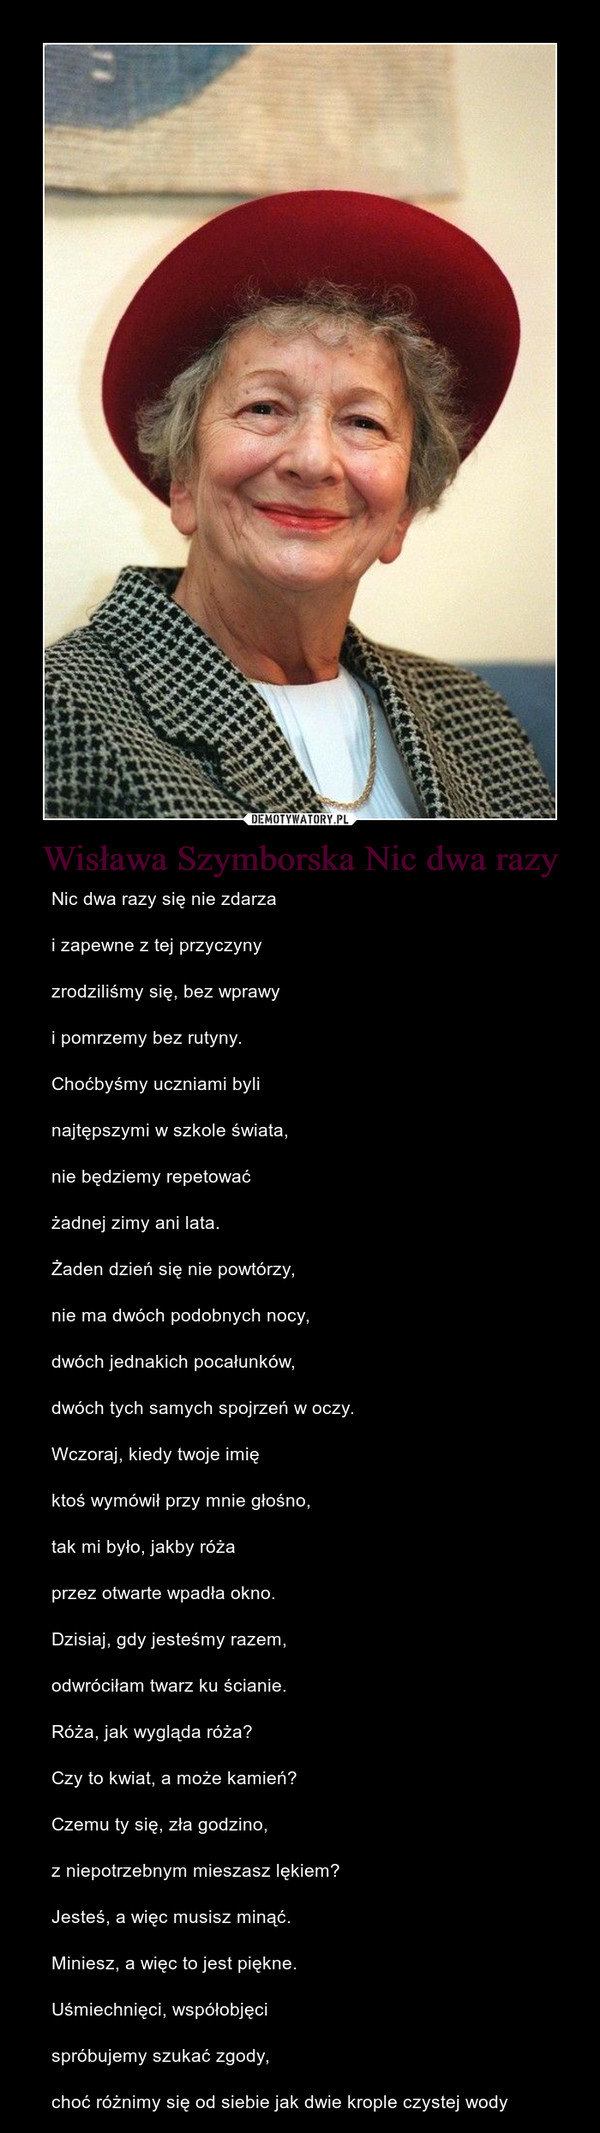 Wisława Szymborska Nic dwa razy